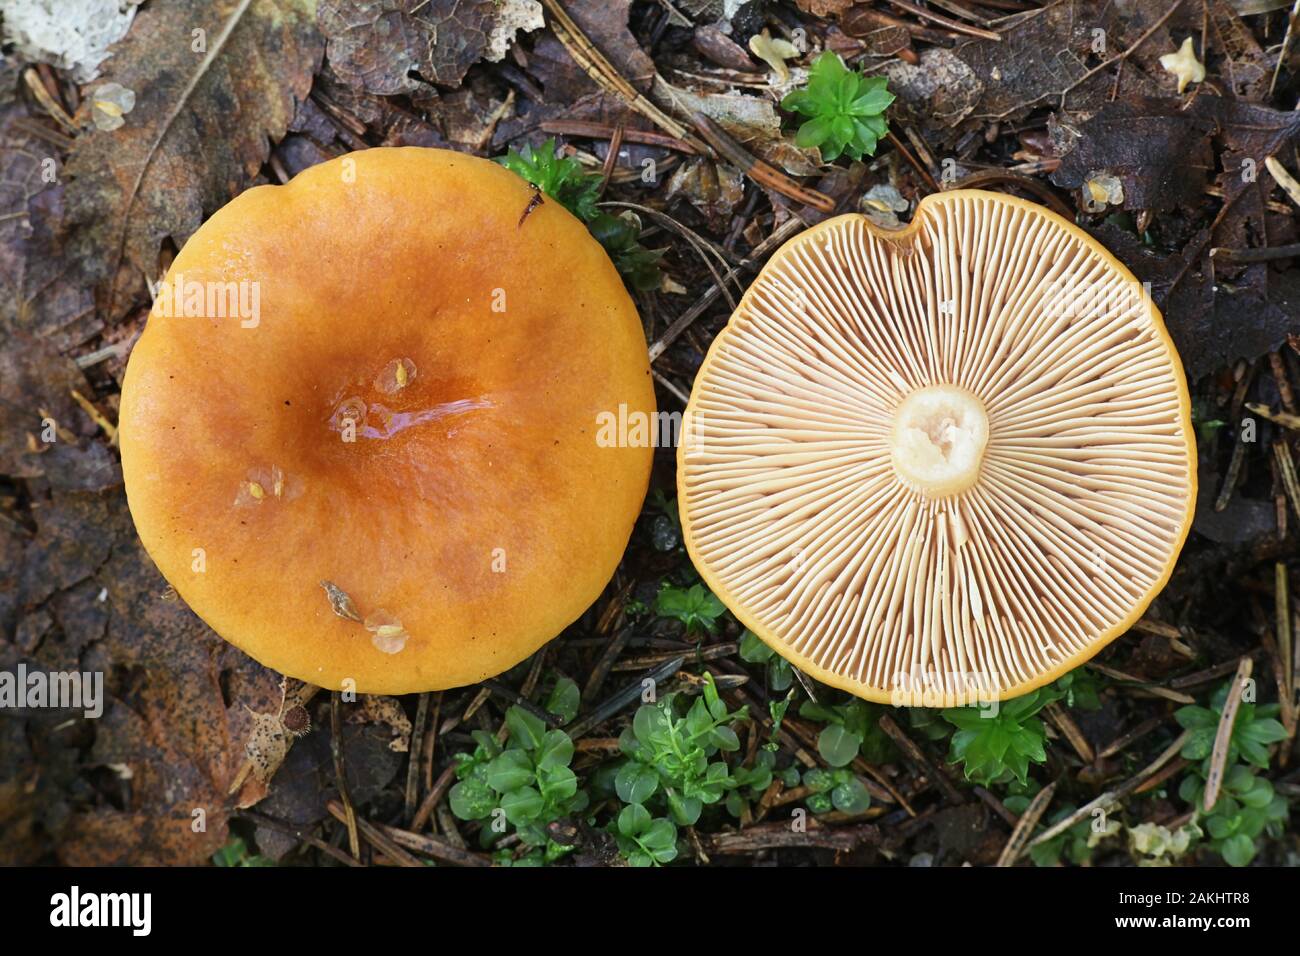 Lactarius aurantiacus, known as orange milkcap or orange milk-cap, edible mushroom from Finland Stock Photo